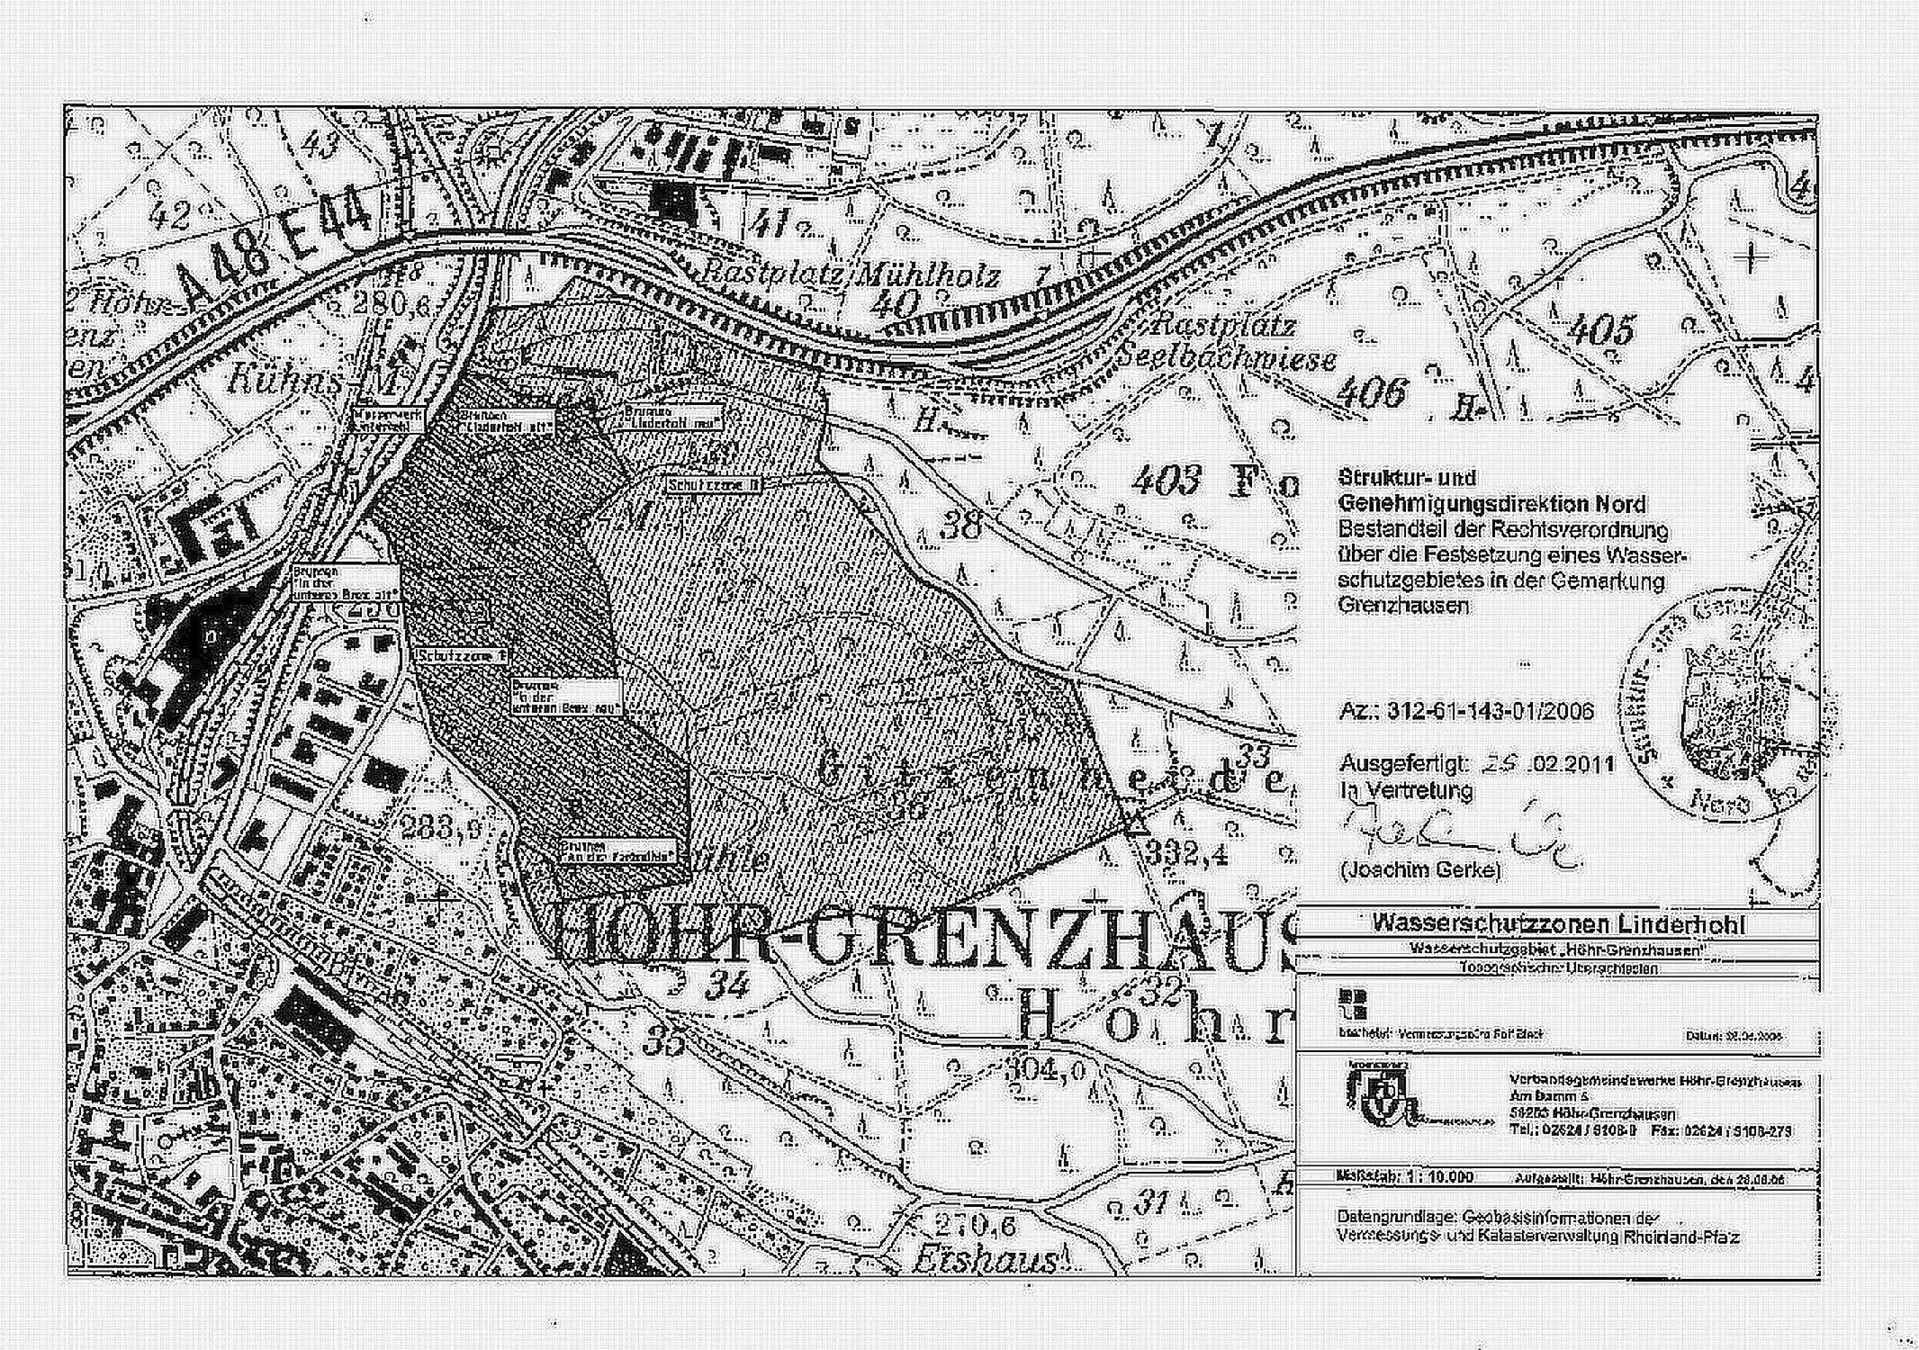 Zu sehen ist eine Übersichtskarte des Wasserschutzgebietes Höhr-Grenzhausen (Brunnen Linderhohl, u.a.)